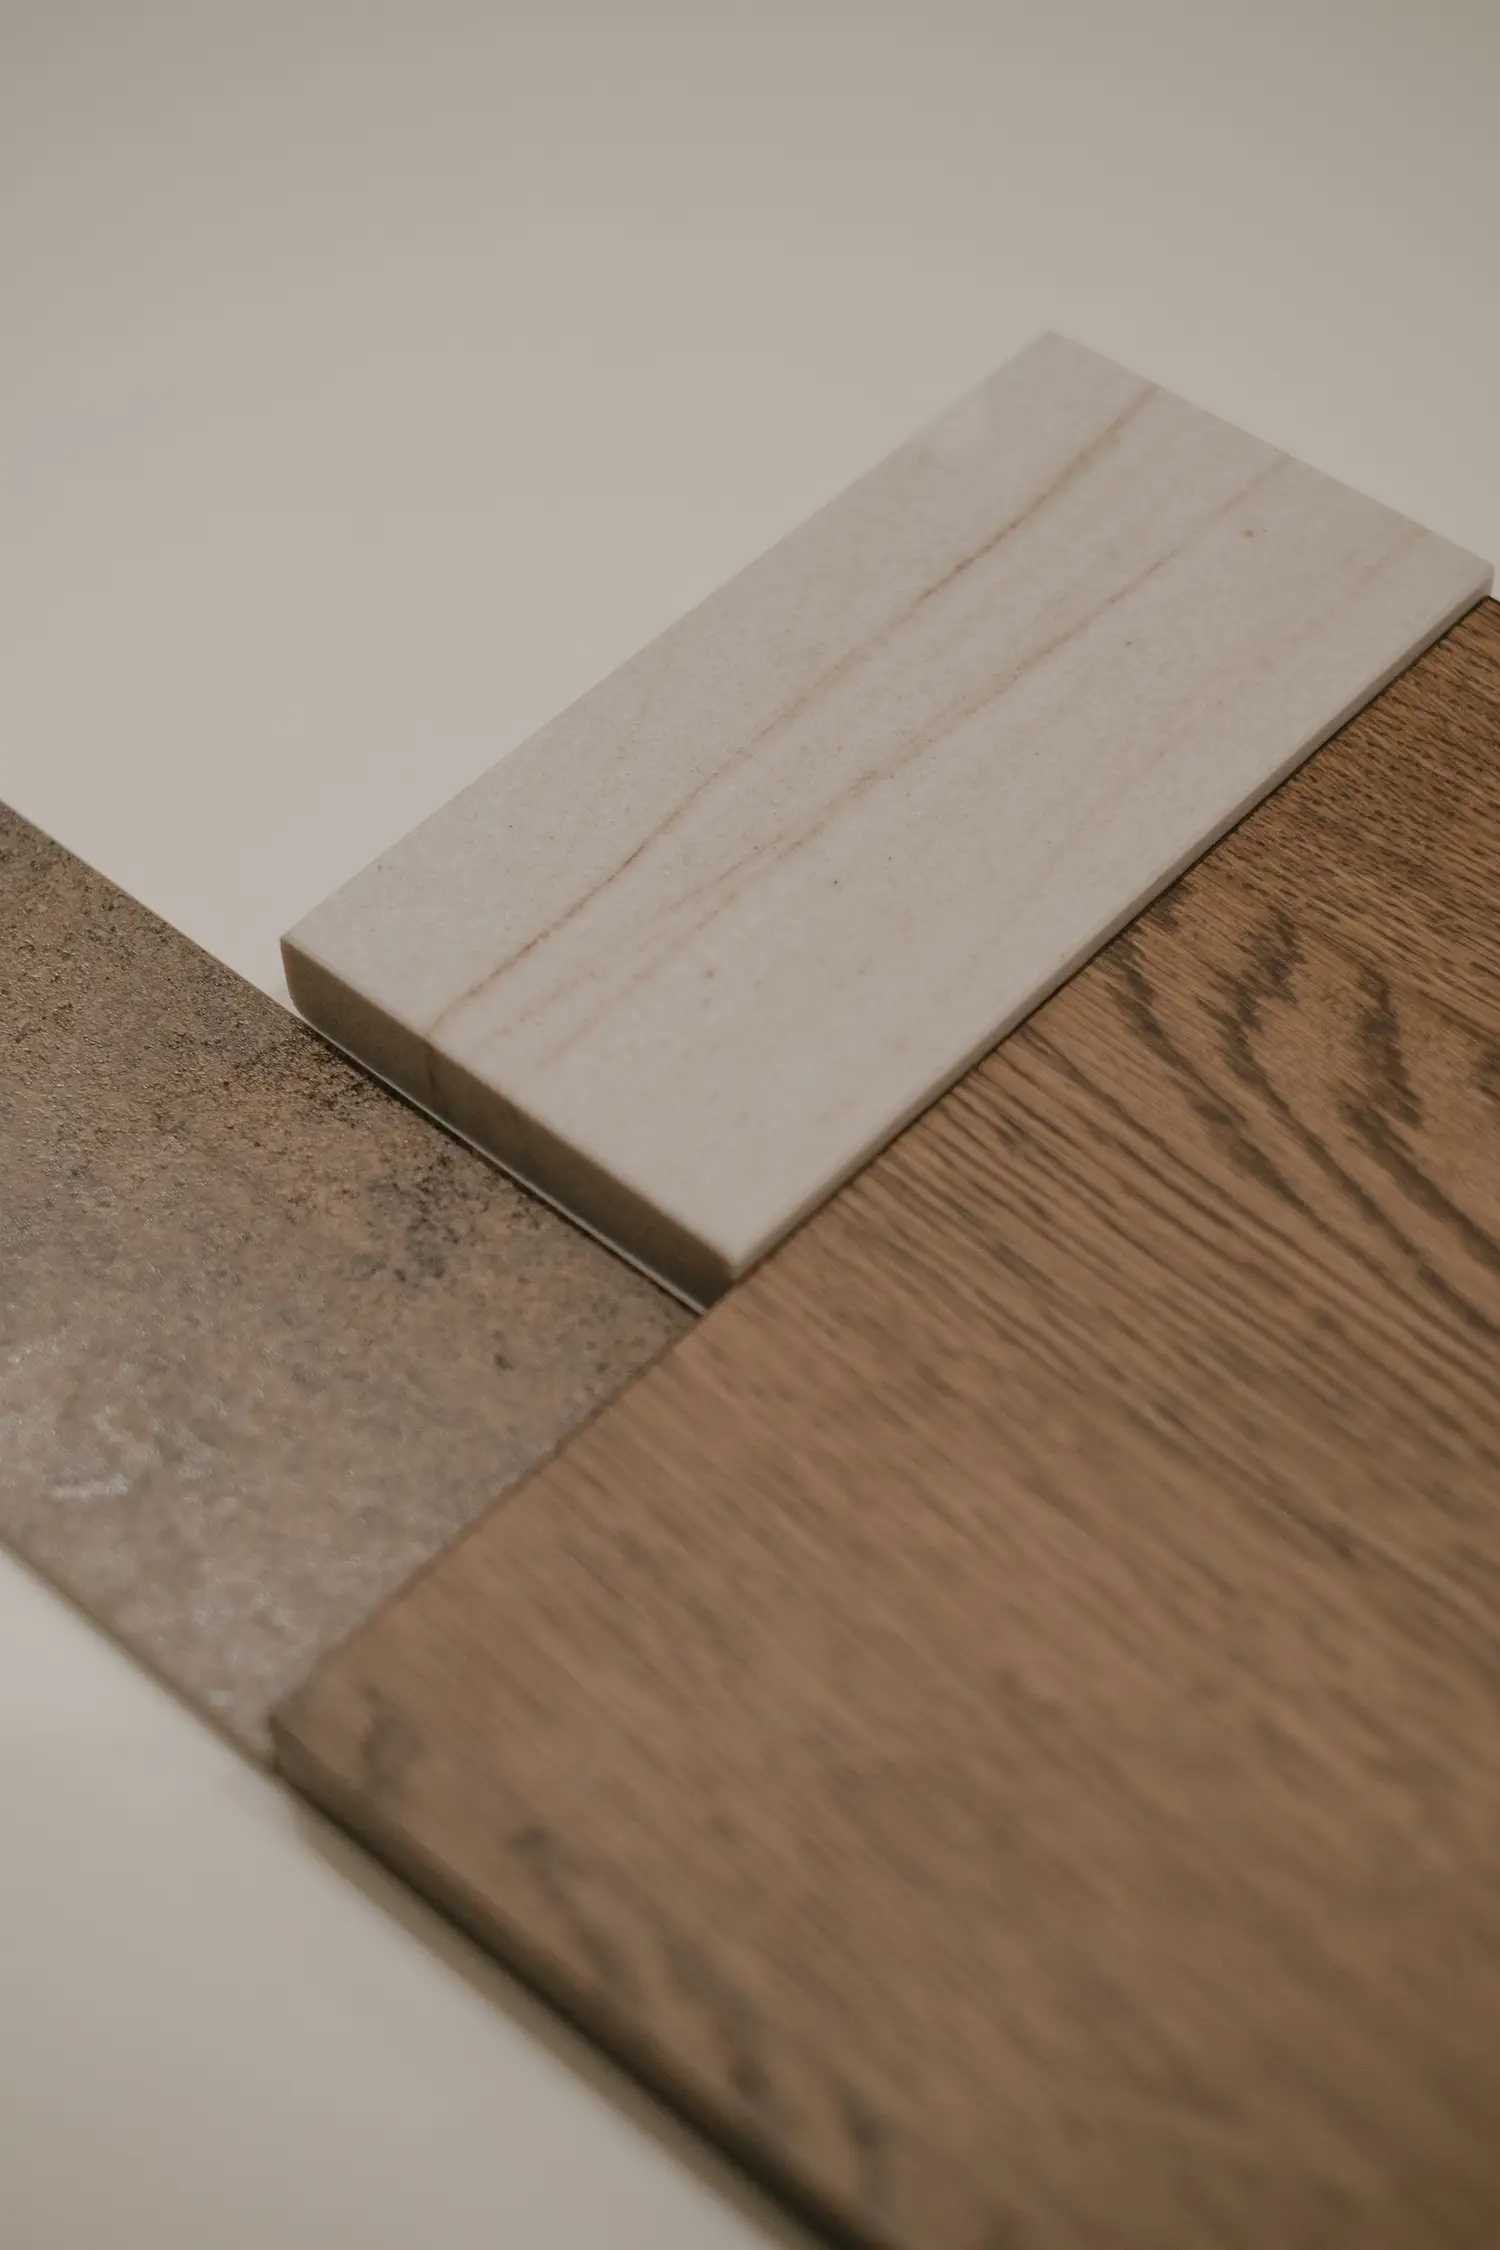 Accostamento di campioni di legno dalla finitura diversa, nella costruzione di una moodboard dello studio Elles Interior Design studio.